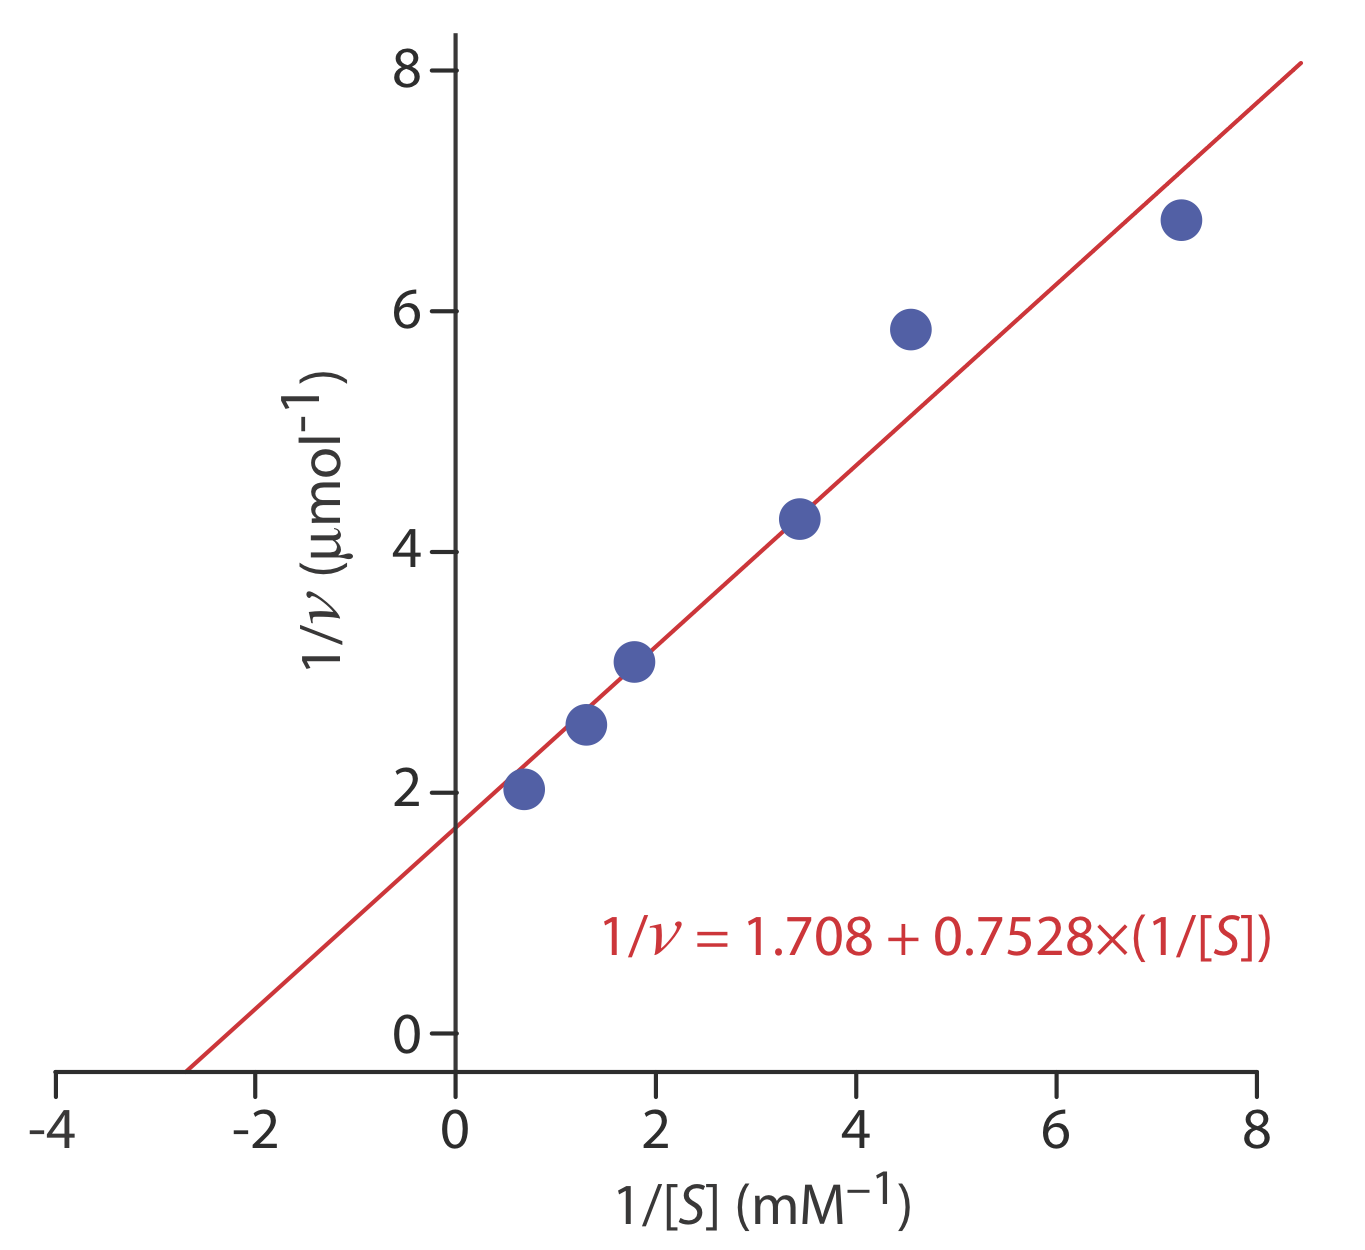 La gráfica Lineweaver—Burk muestra que la ecuación de regresión para los datos es 1/v=1.708+0.7528* (1/ [S]).